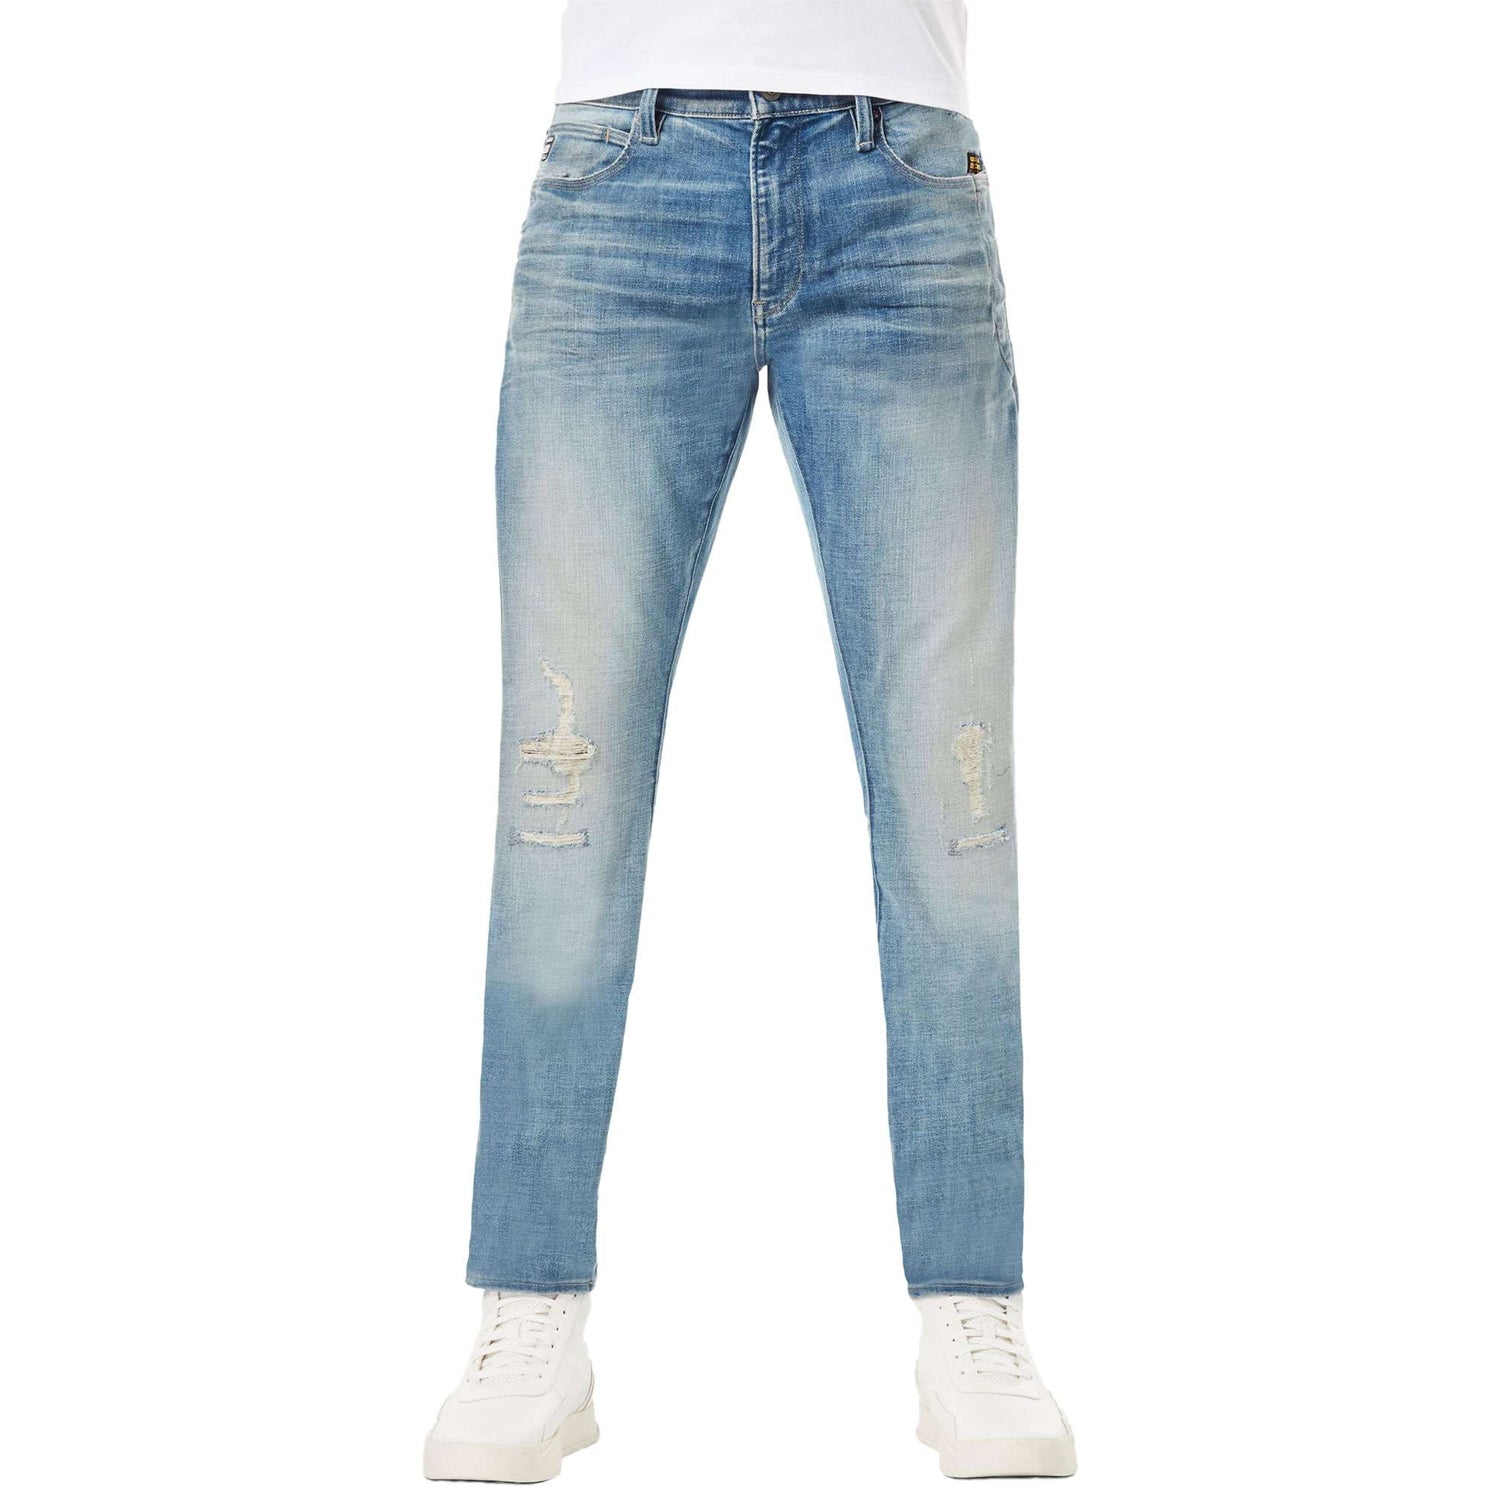 G-Star Lancet Skinny Jeans - Elto Superstretch Vintage Cool Aqua Restored